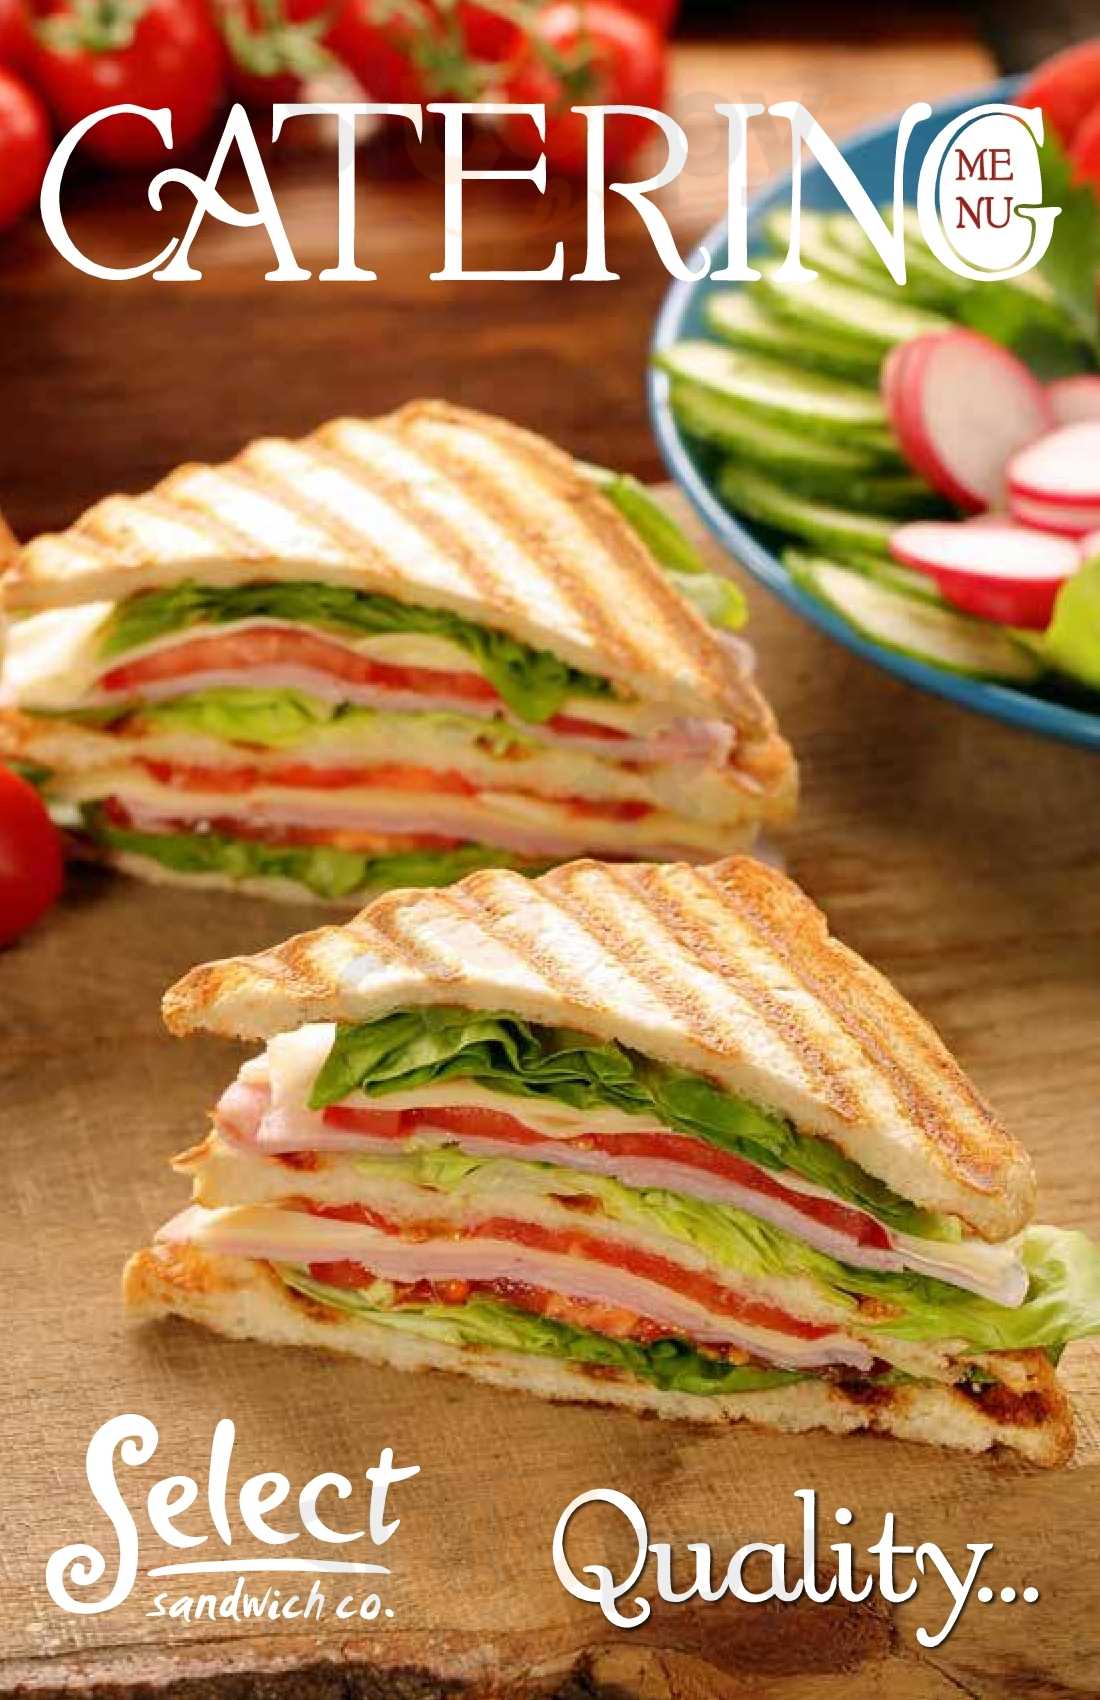 Select Sandwich Mississauga Menu - 1